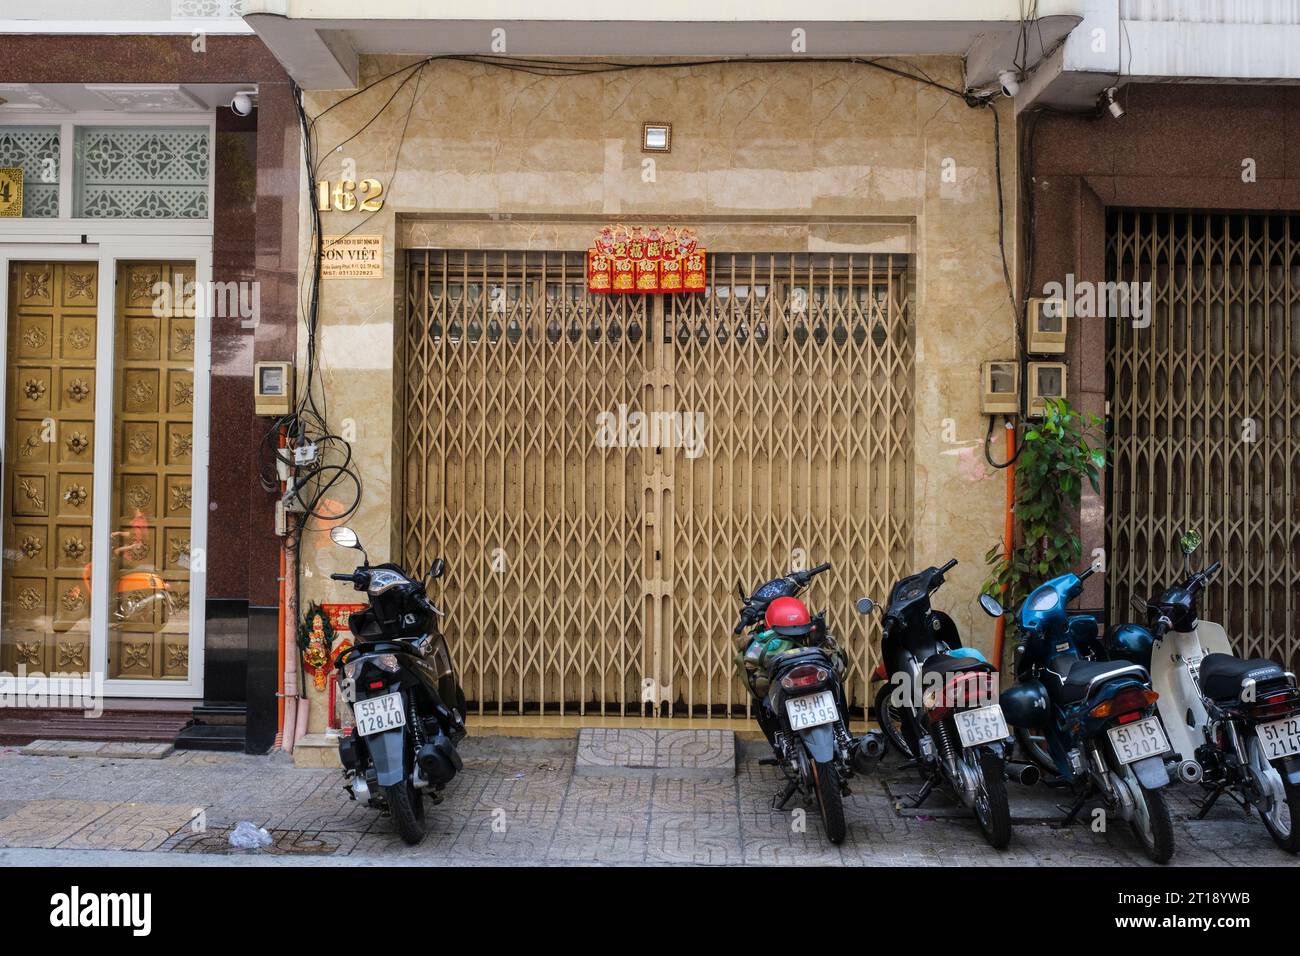 Petit miroir au-dessus de la porte effraie les démons loin de la maison. Ho Chi Minh, Vietnam. Bannière rouge-or proclame le bonheur et la bonne fortune. Banque D'Images